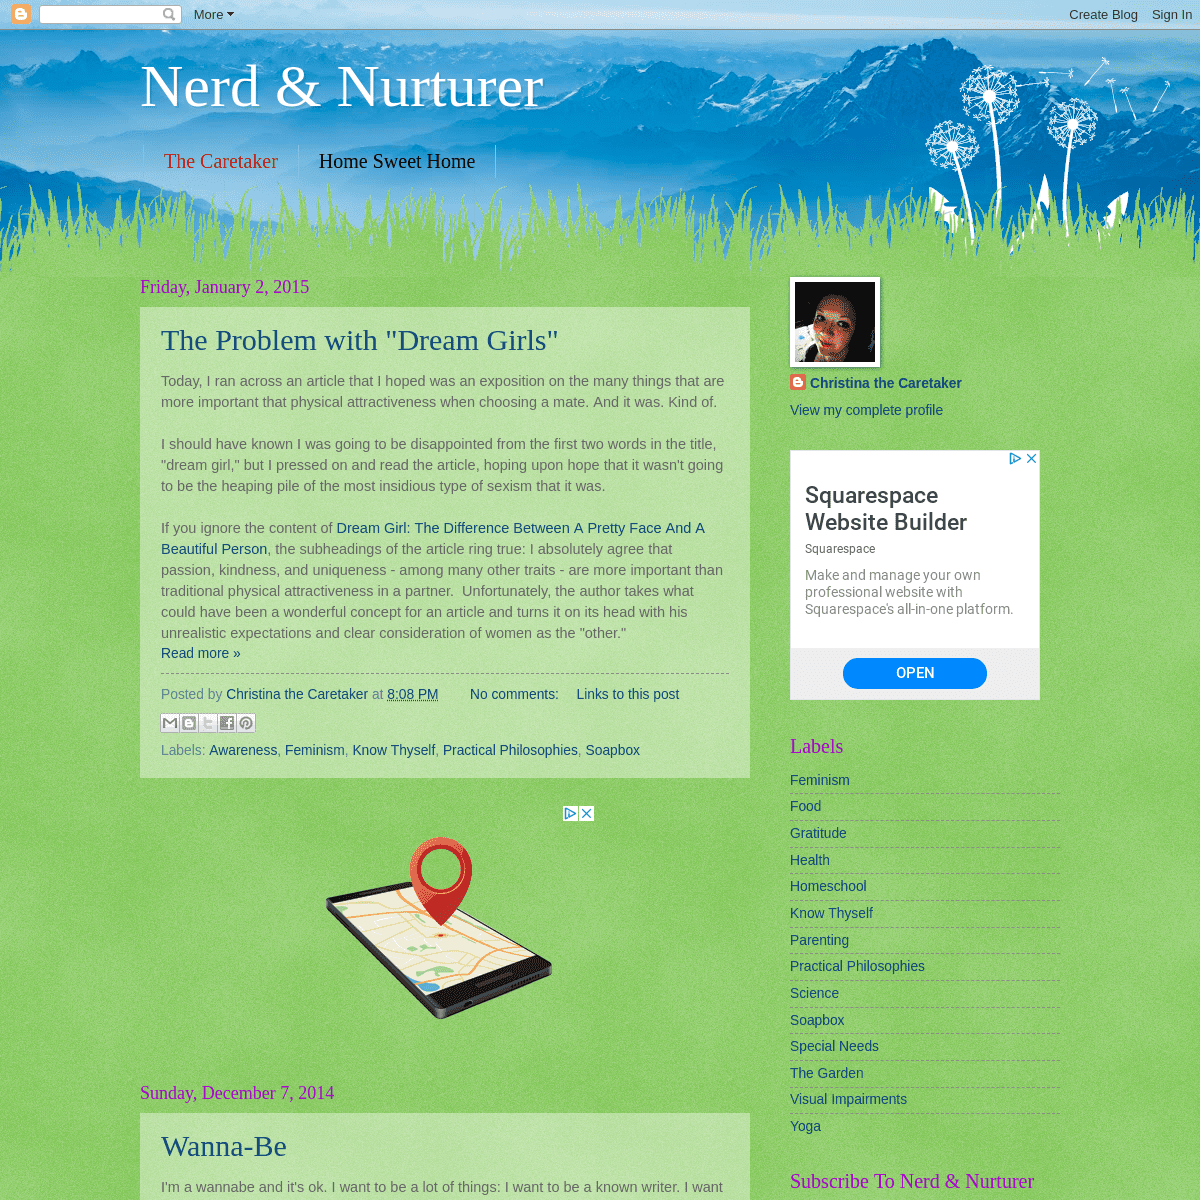 A complete backup of nerdandnurturer.blogspot.com